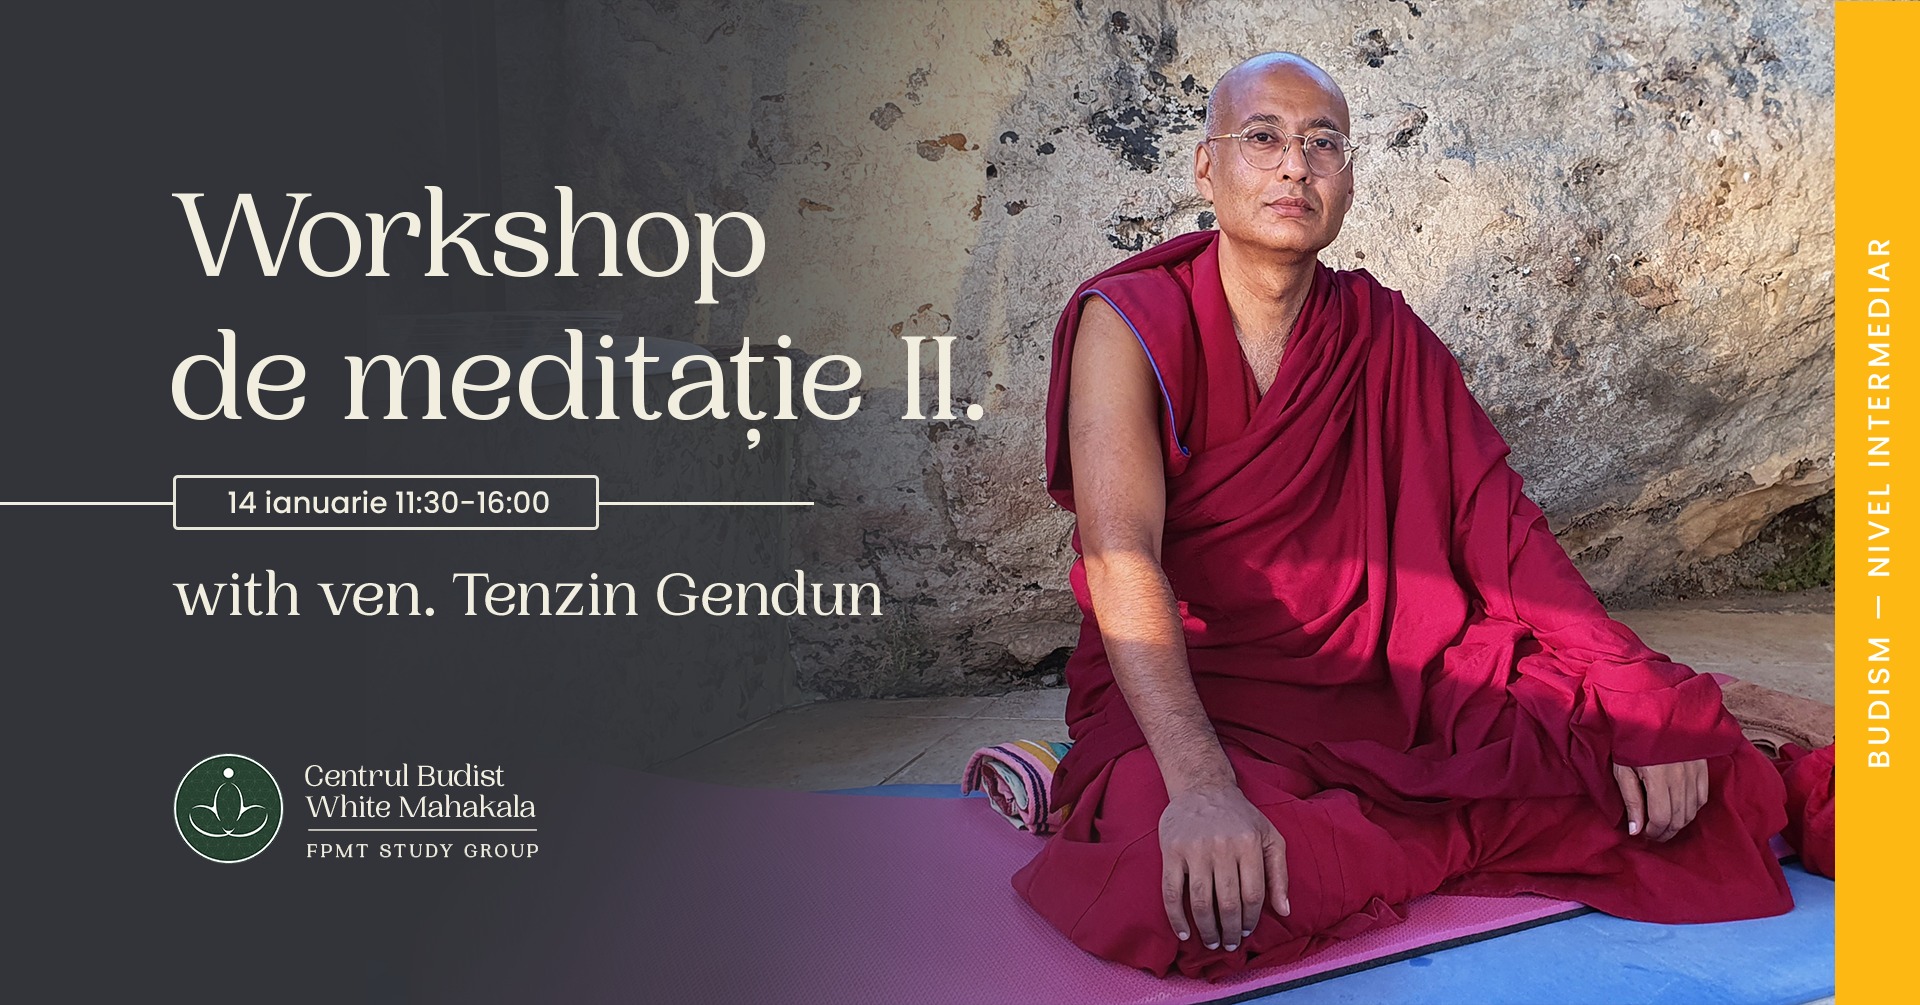 Workshop de meditatie II cu ven. Tenzin Gendun